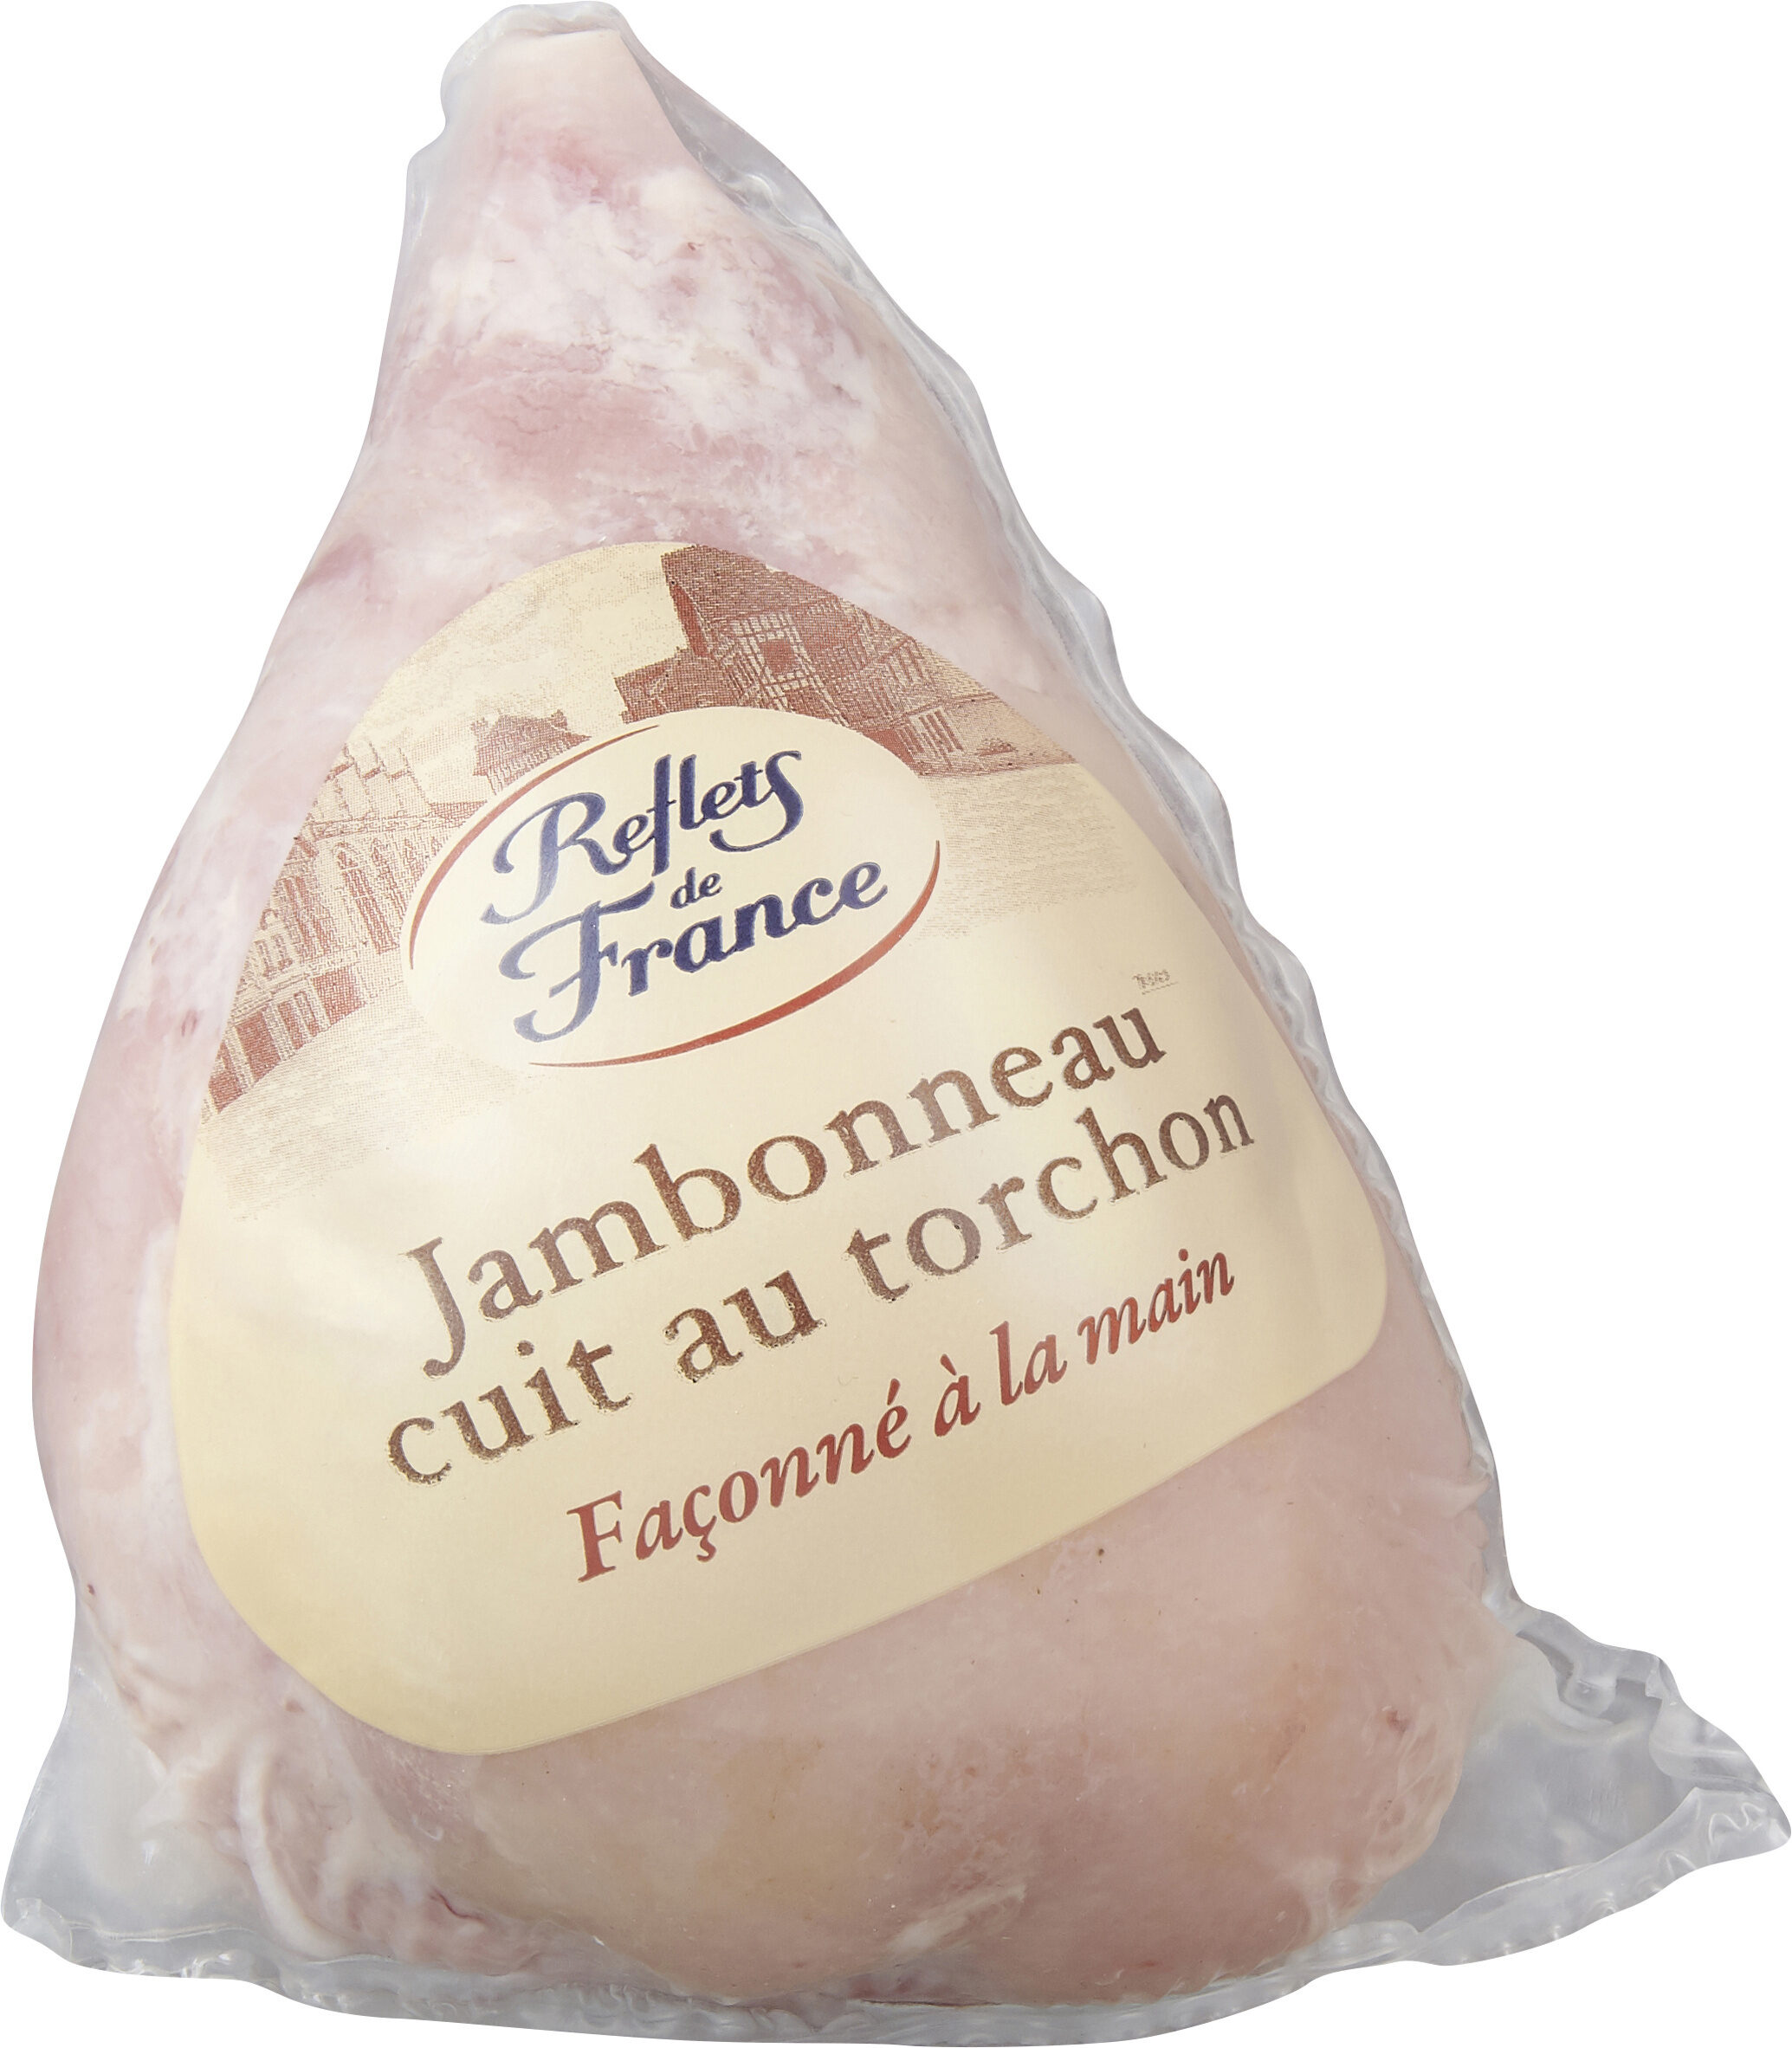 Jambonneau cuit au torchon - Product - fr